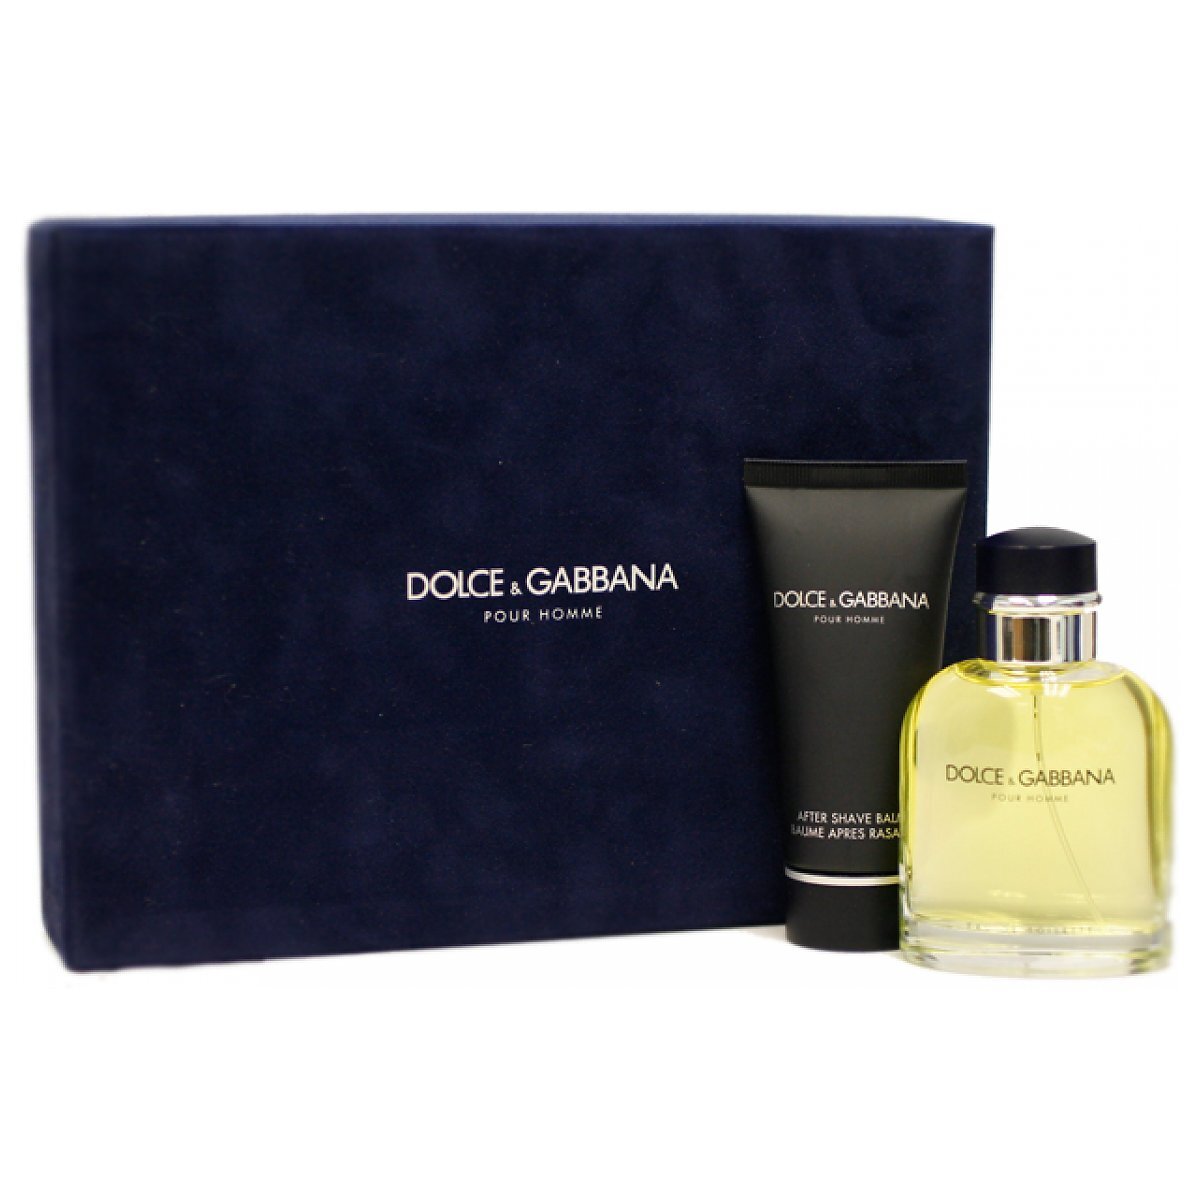 Дольче габбана хоме. Dolce Gabbana pour homme мужские. D&G Dolce&Gabbana pour homme. Dolce Gabbana pour homme 2012. Dolce&Gabbana pour homme (2012) Dolce&Gabbana for men.